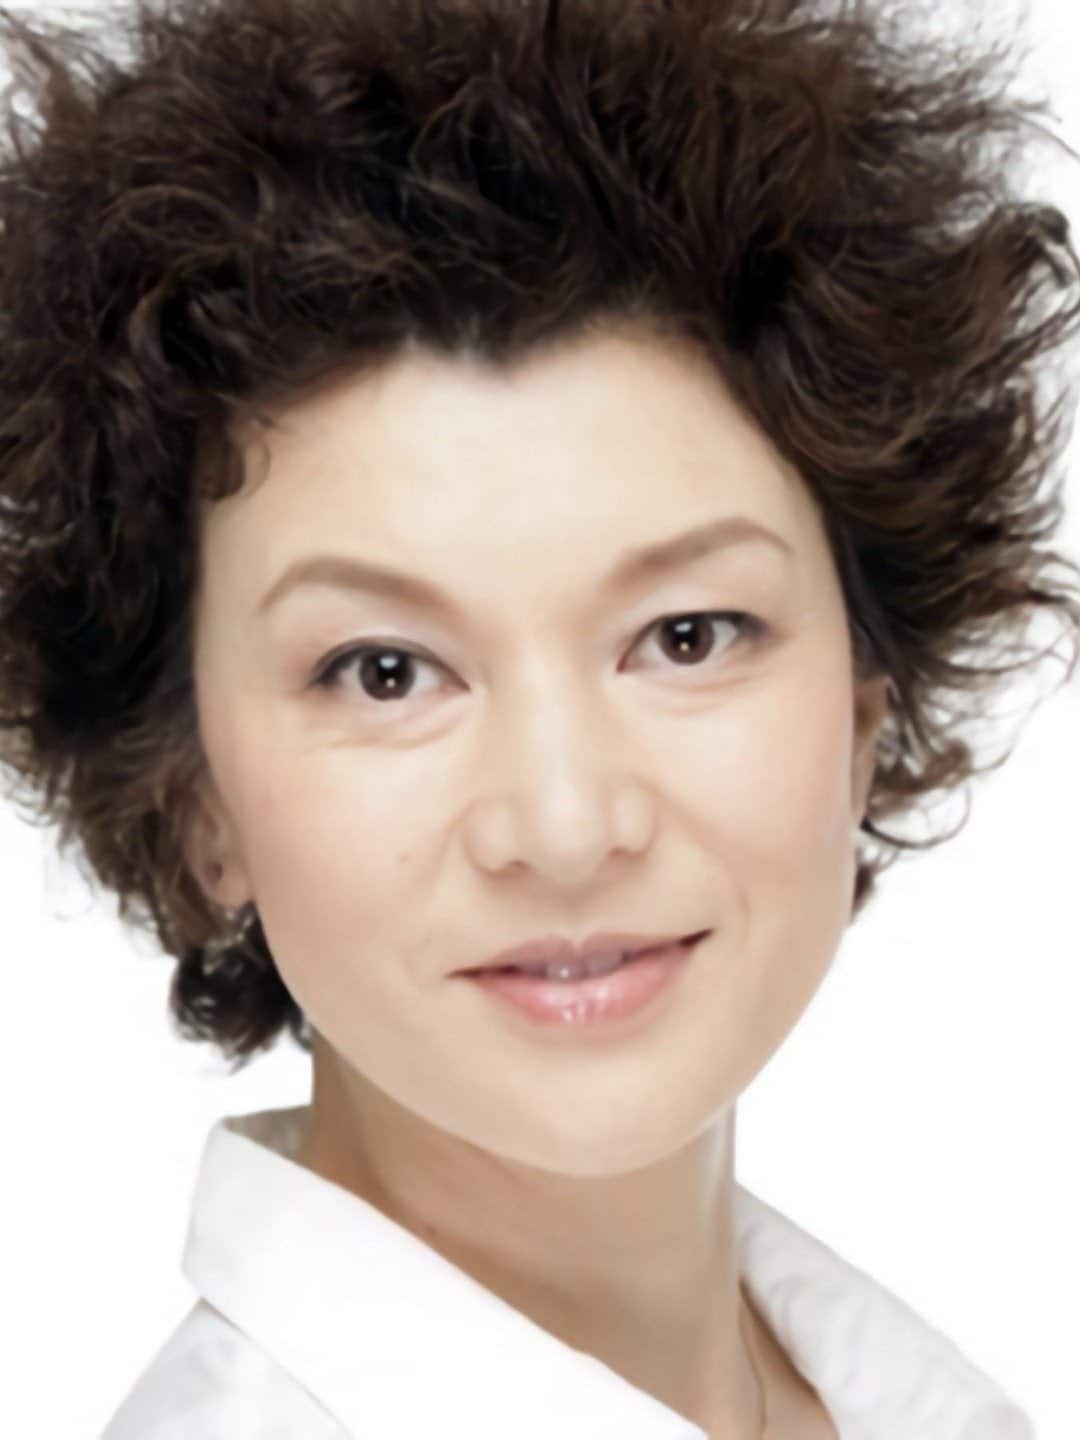 Anna Nakagawa